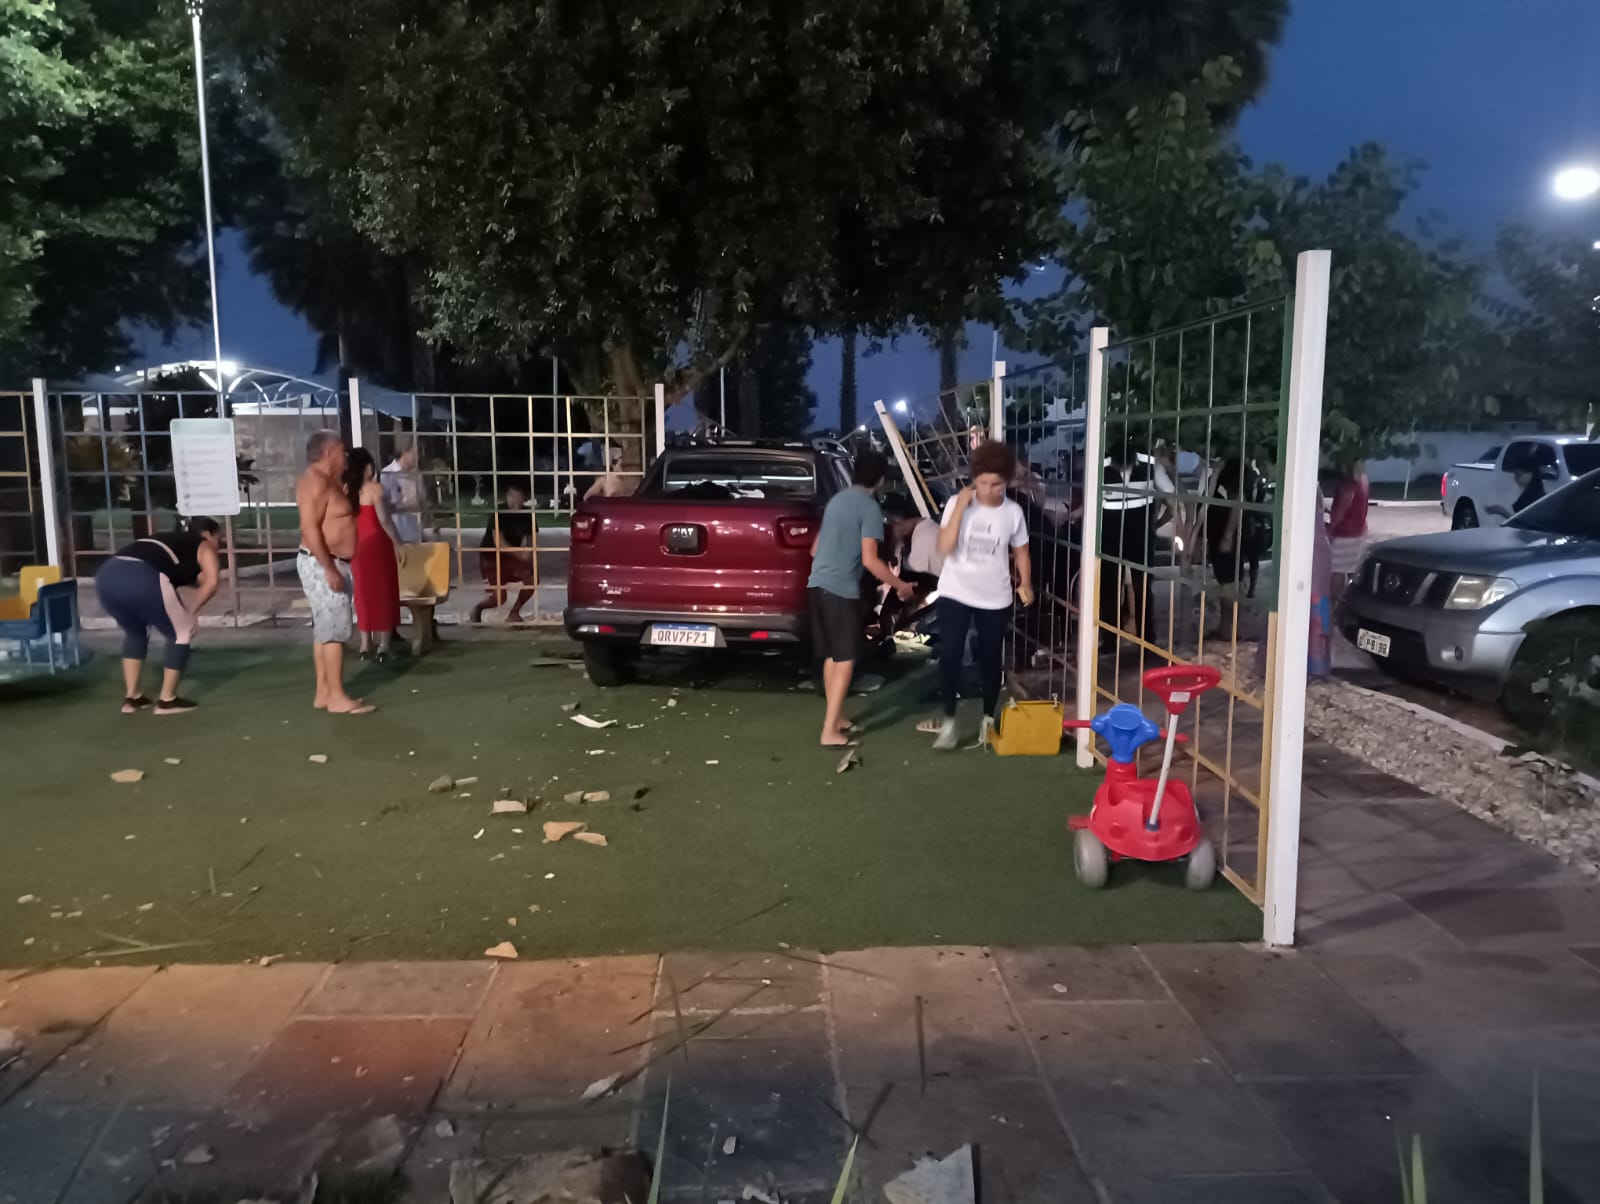 O carros descontrolado ficou dentro do playground